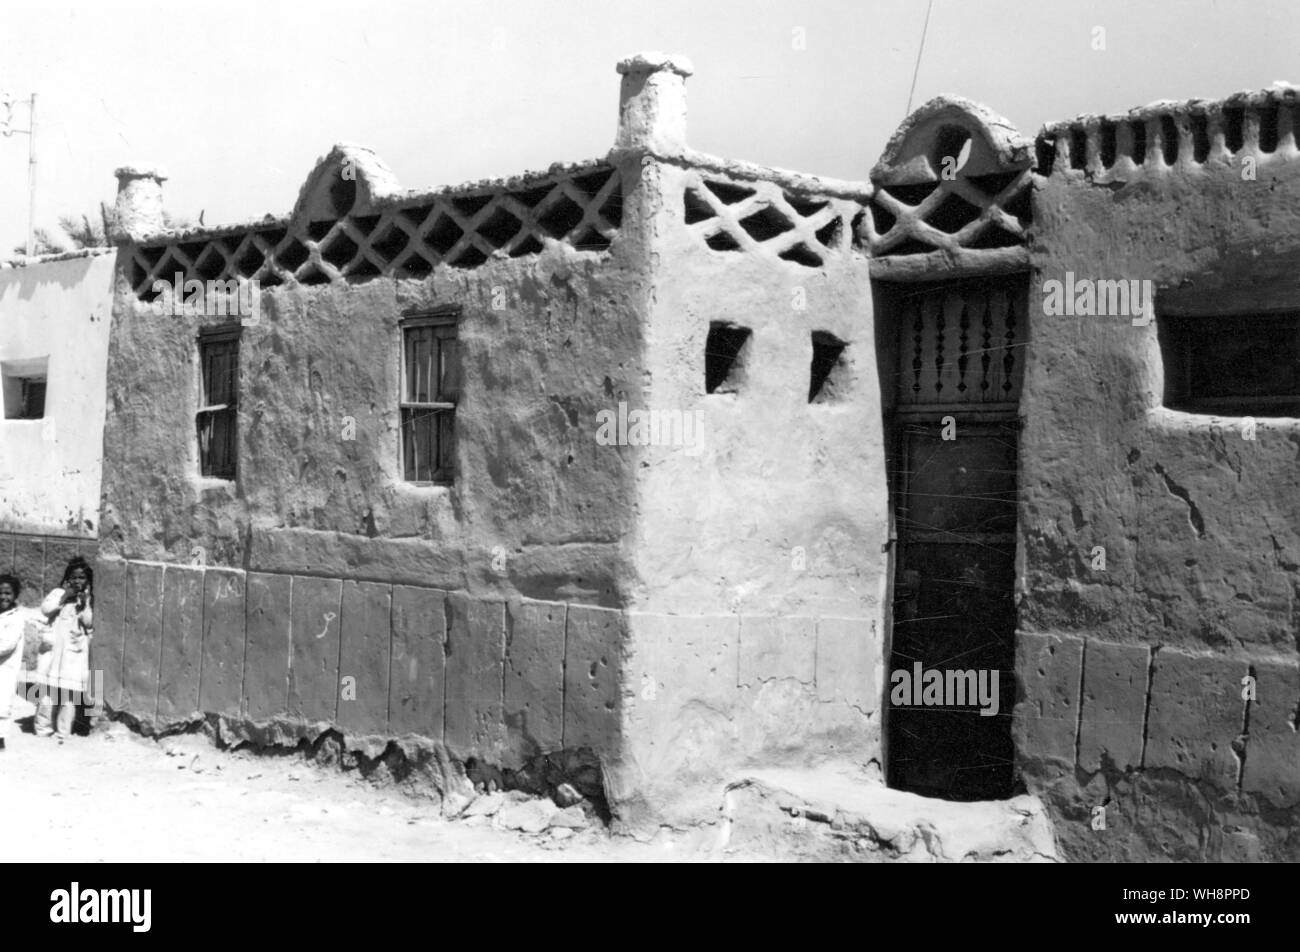 Kalabsha, l'Égypte. 'Les maisons étaient simples. Les murs étaient rendus je n'ai donc pas été en mesure de découvrir ce qu'il y avait dessous bu ils n'avaient pas l'air d'être construit de brique de boue'. Banque D'Images